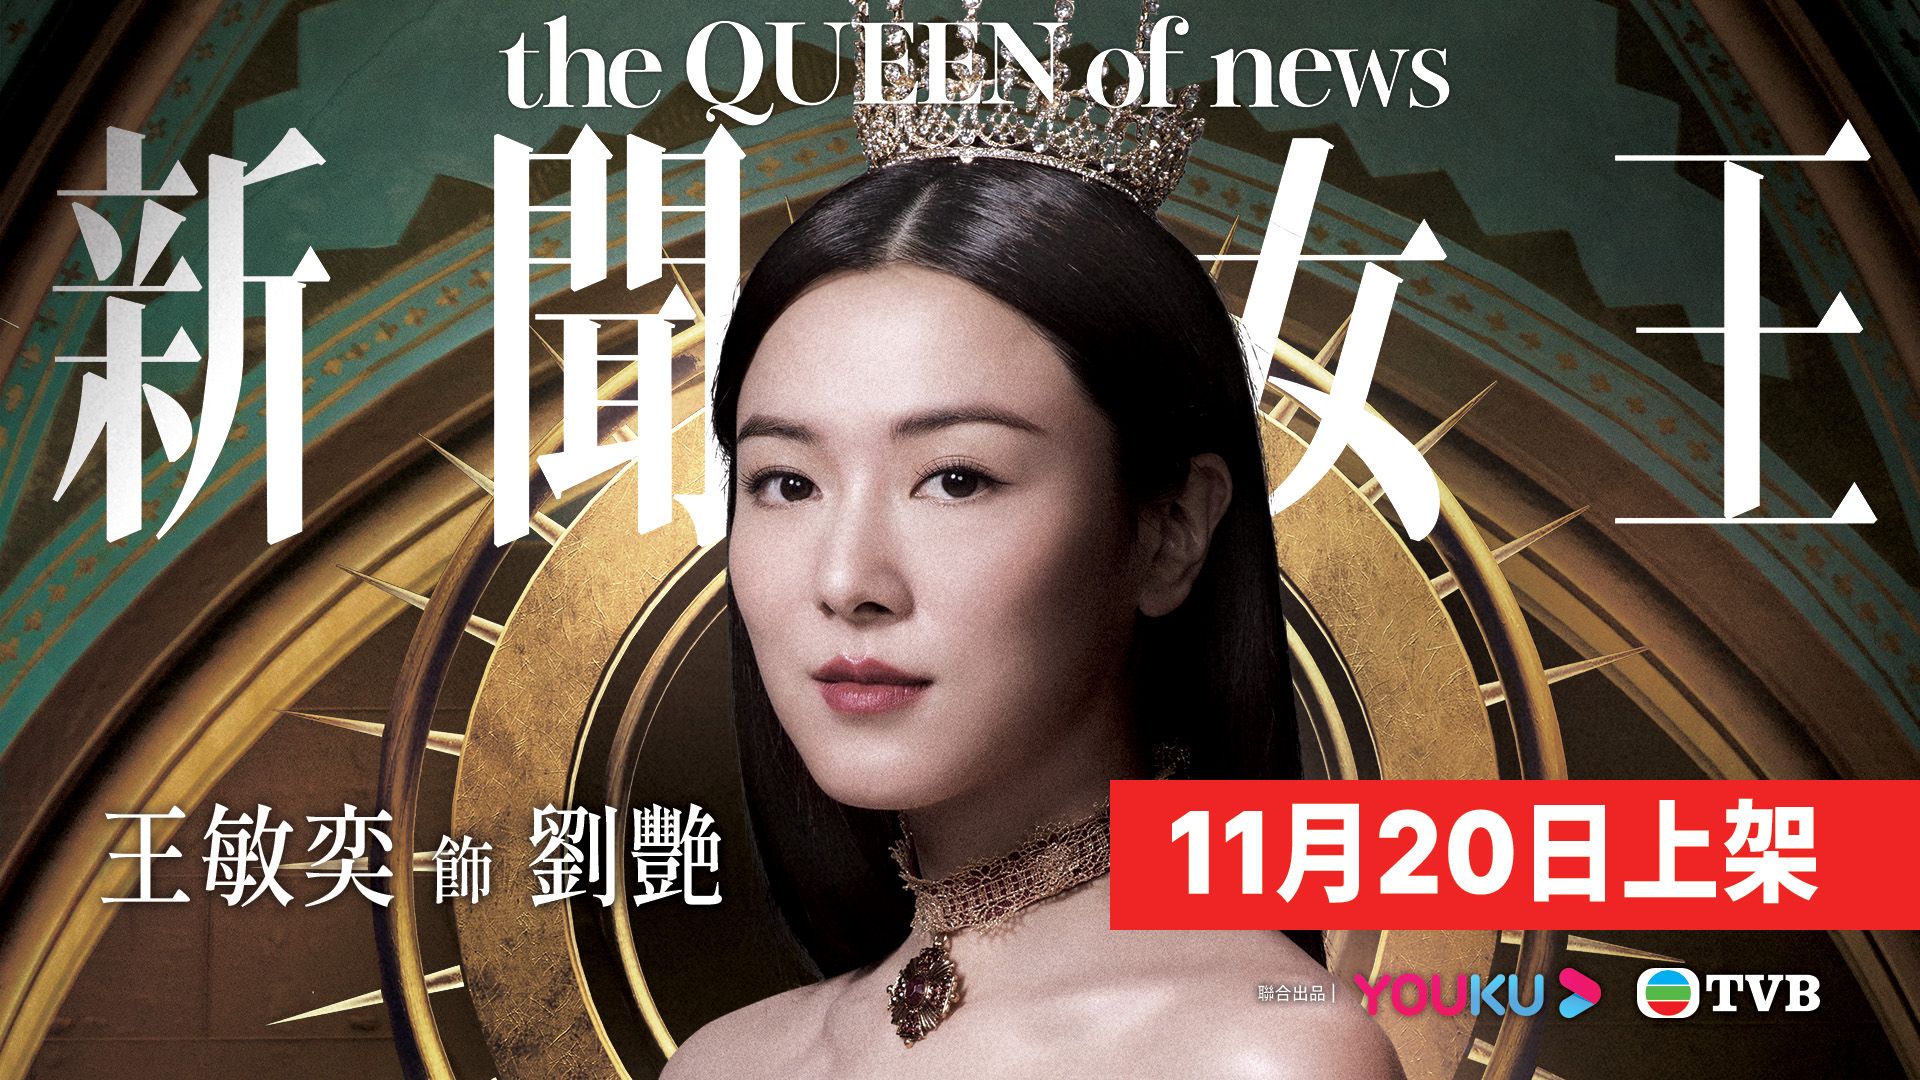 新聞女王 王敏奕-The QUEEN Of News Venus